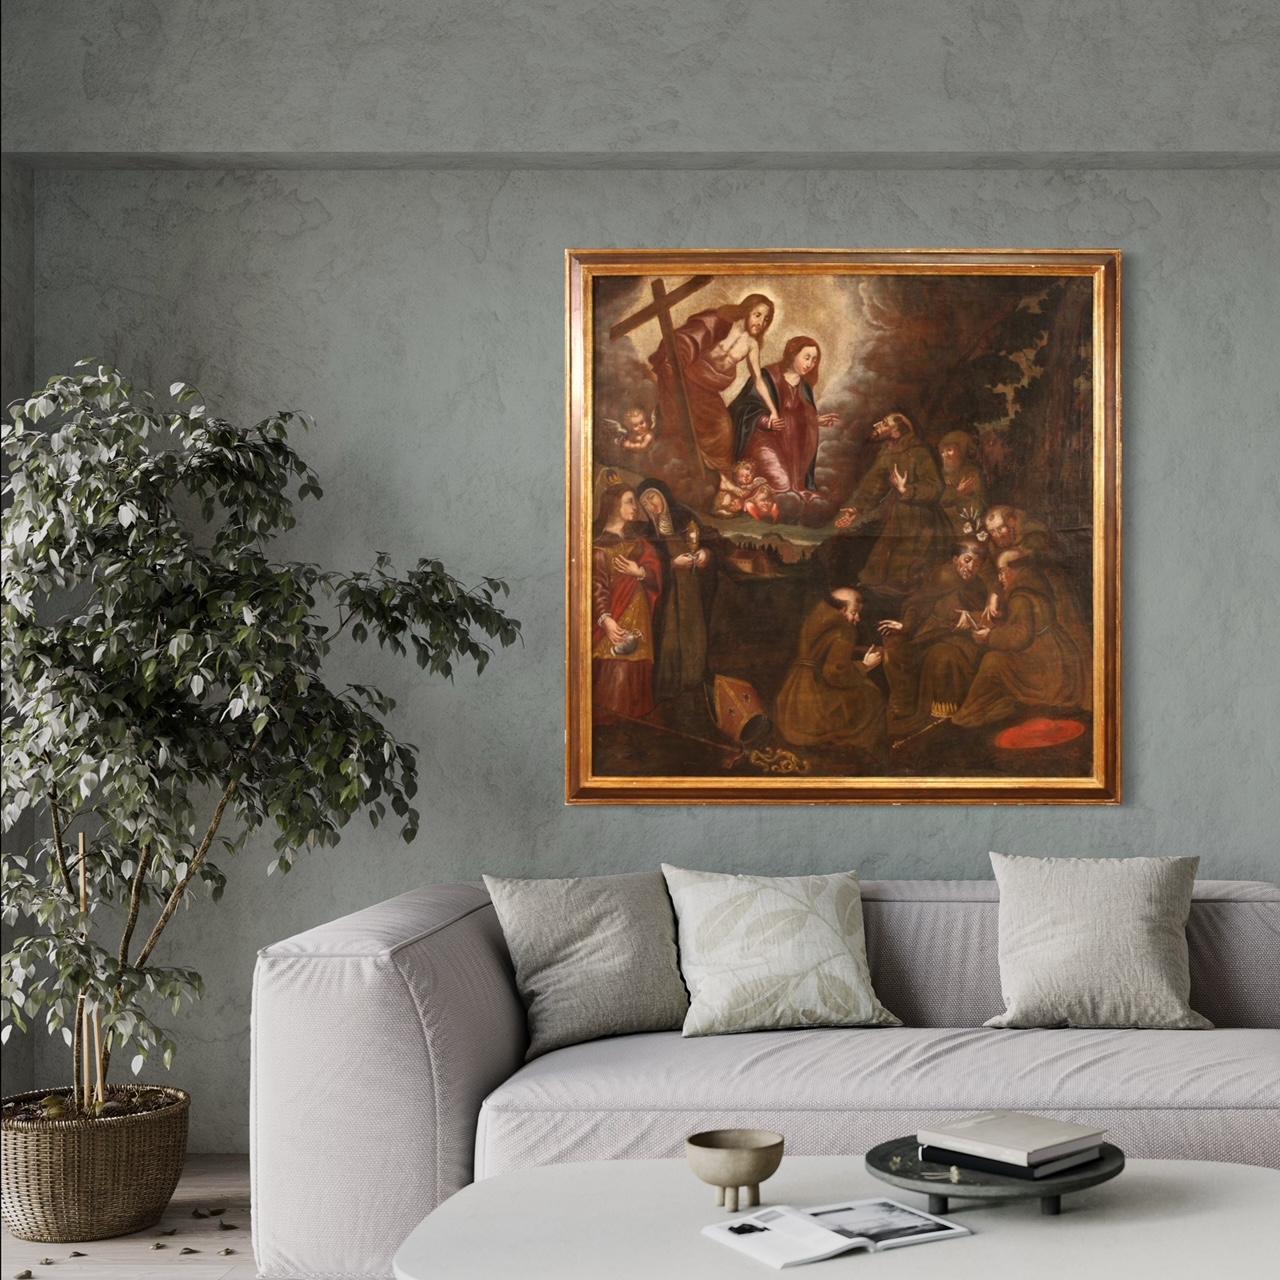 Antikes spanisches Gemälde aus dem 18. Jahrhundert. Kunstwerk Öl auf Leinwand, das ein religiöses Thema darstellt, Anbetung der Heiligen mit Christus und der Jungfrau Maria, von guter malerischer Qualität. Im unteren Teil platziert der Maler